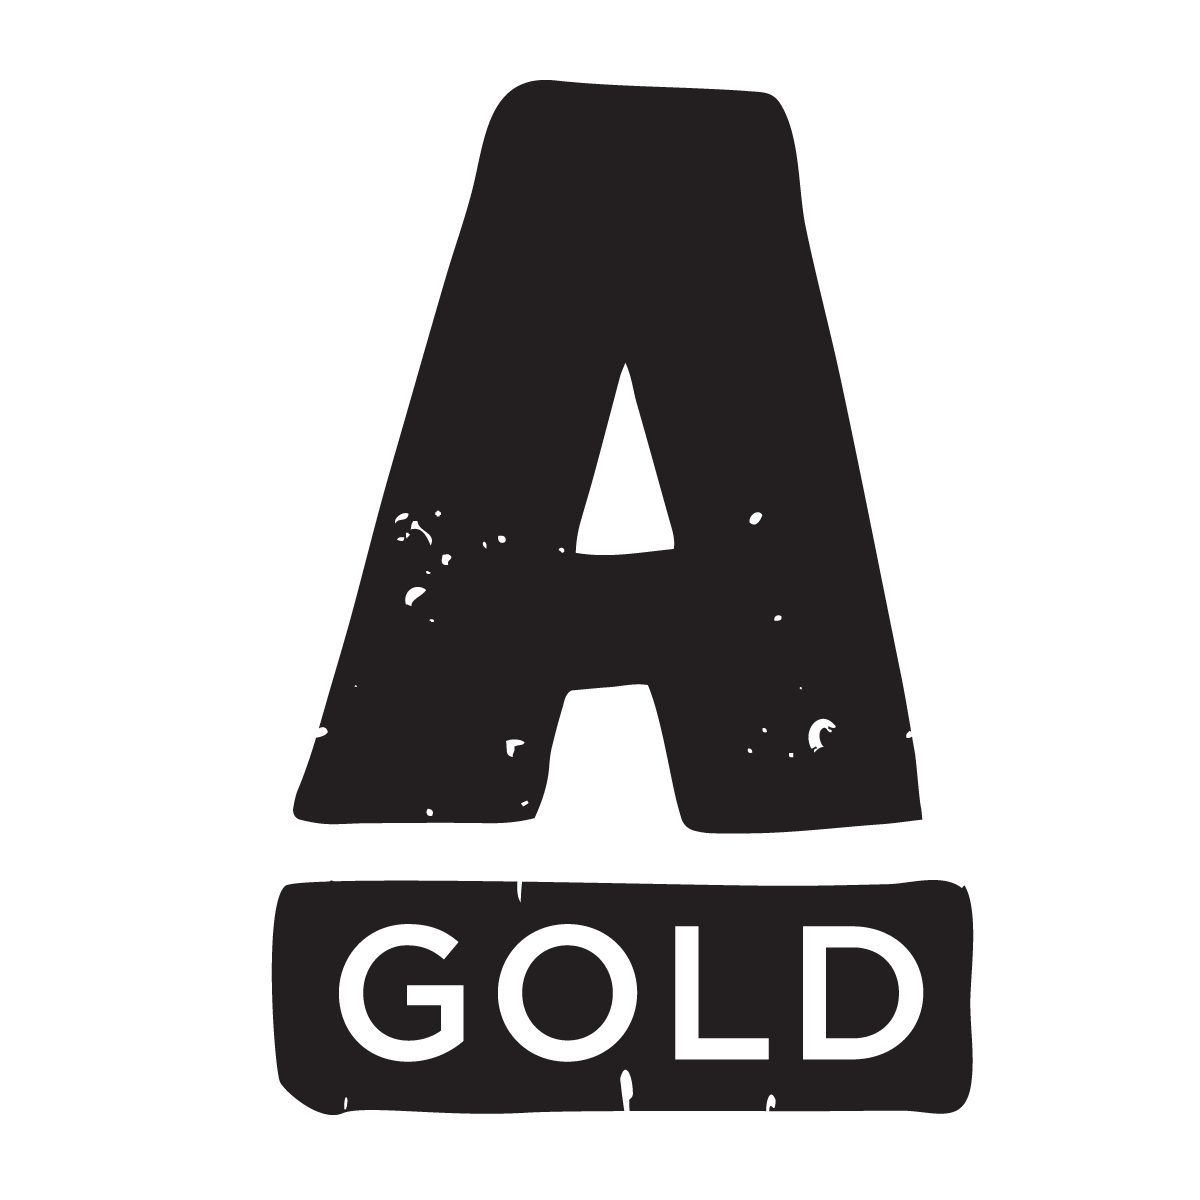 A.GOLD.MEDIA